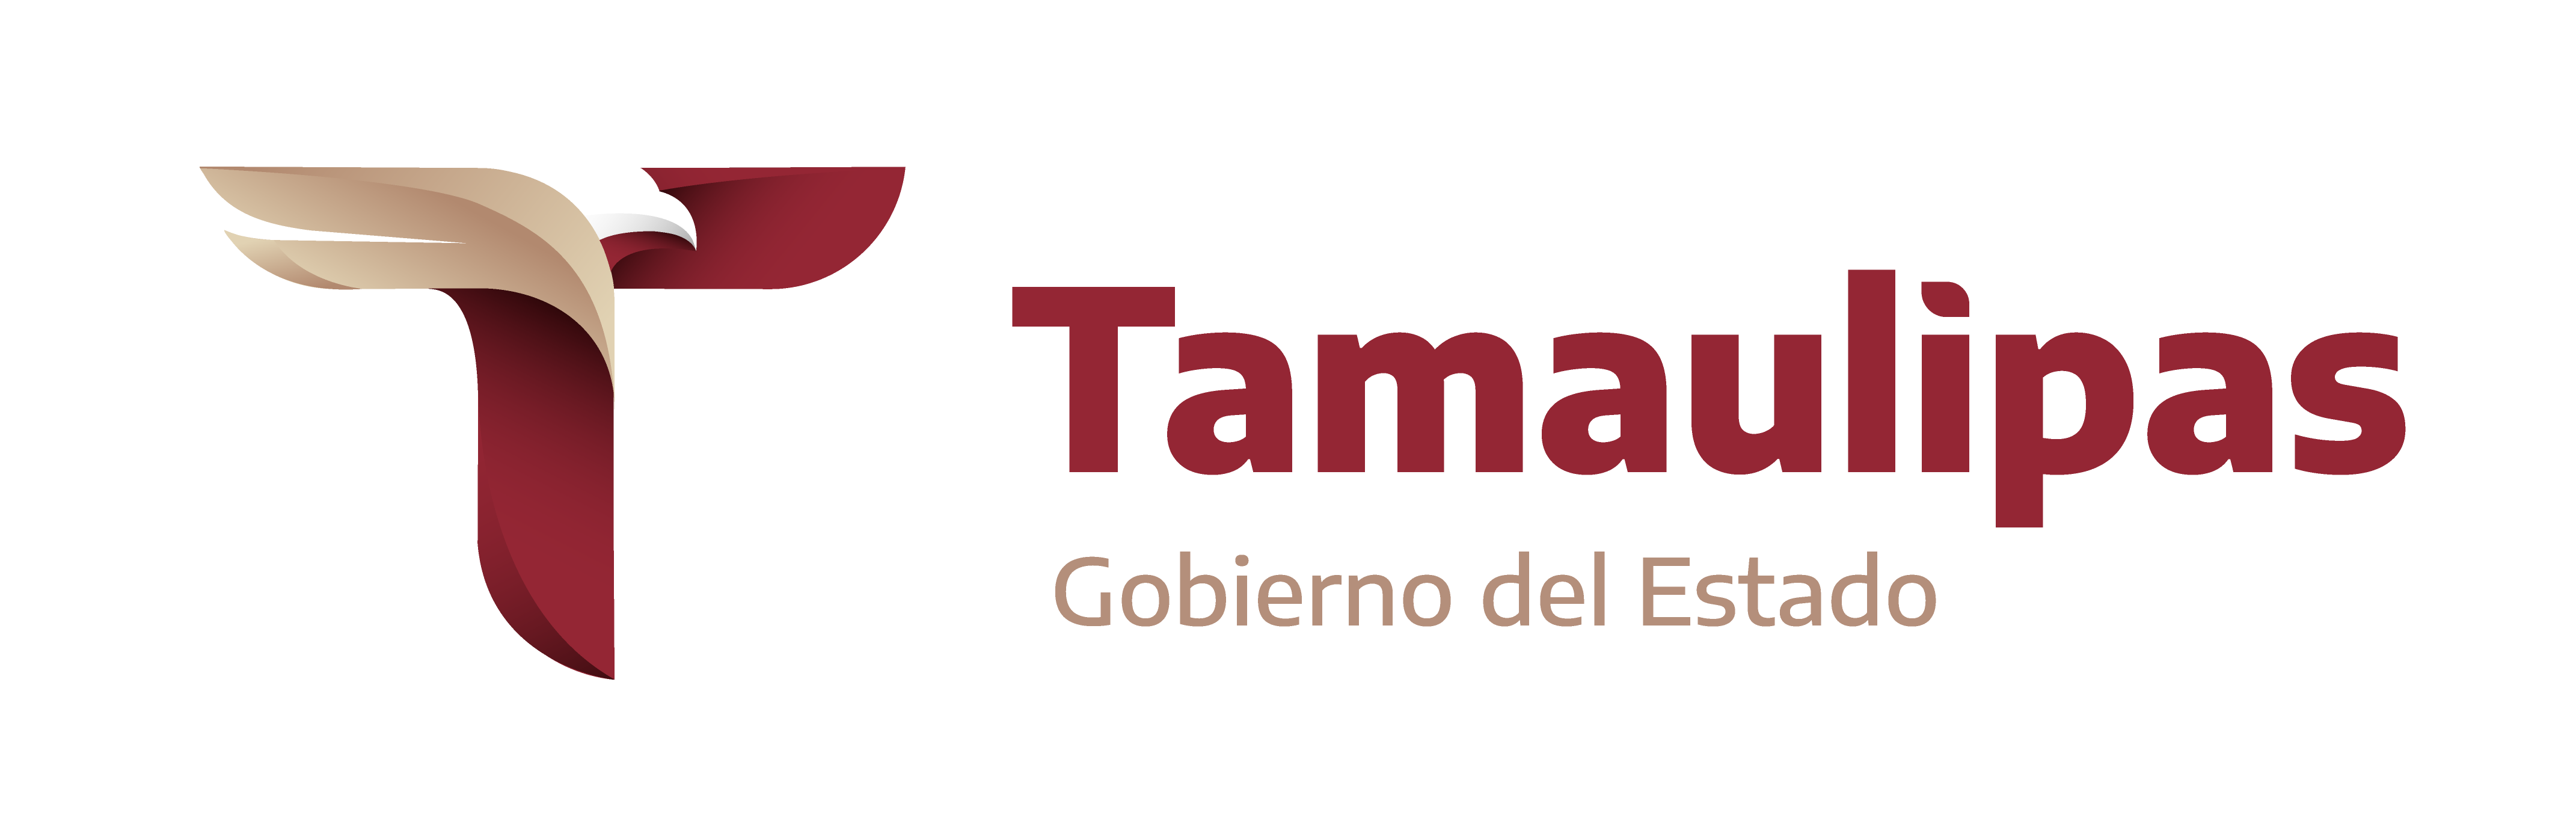 Datos Abiertos Tamaulipas - Gobierno del Estado de Tamaulipas